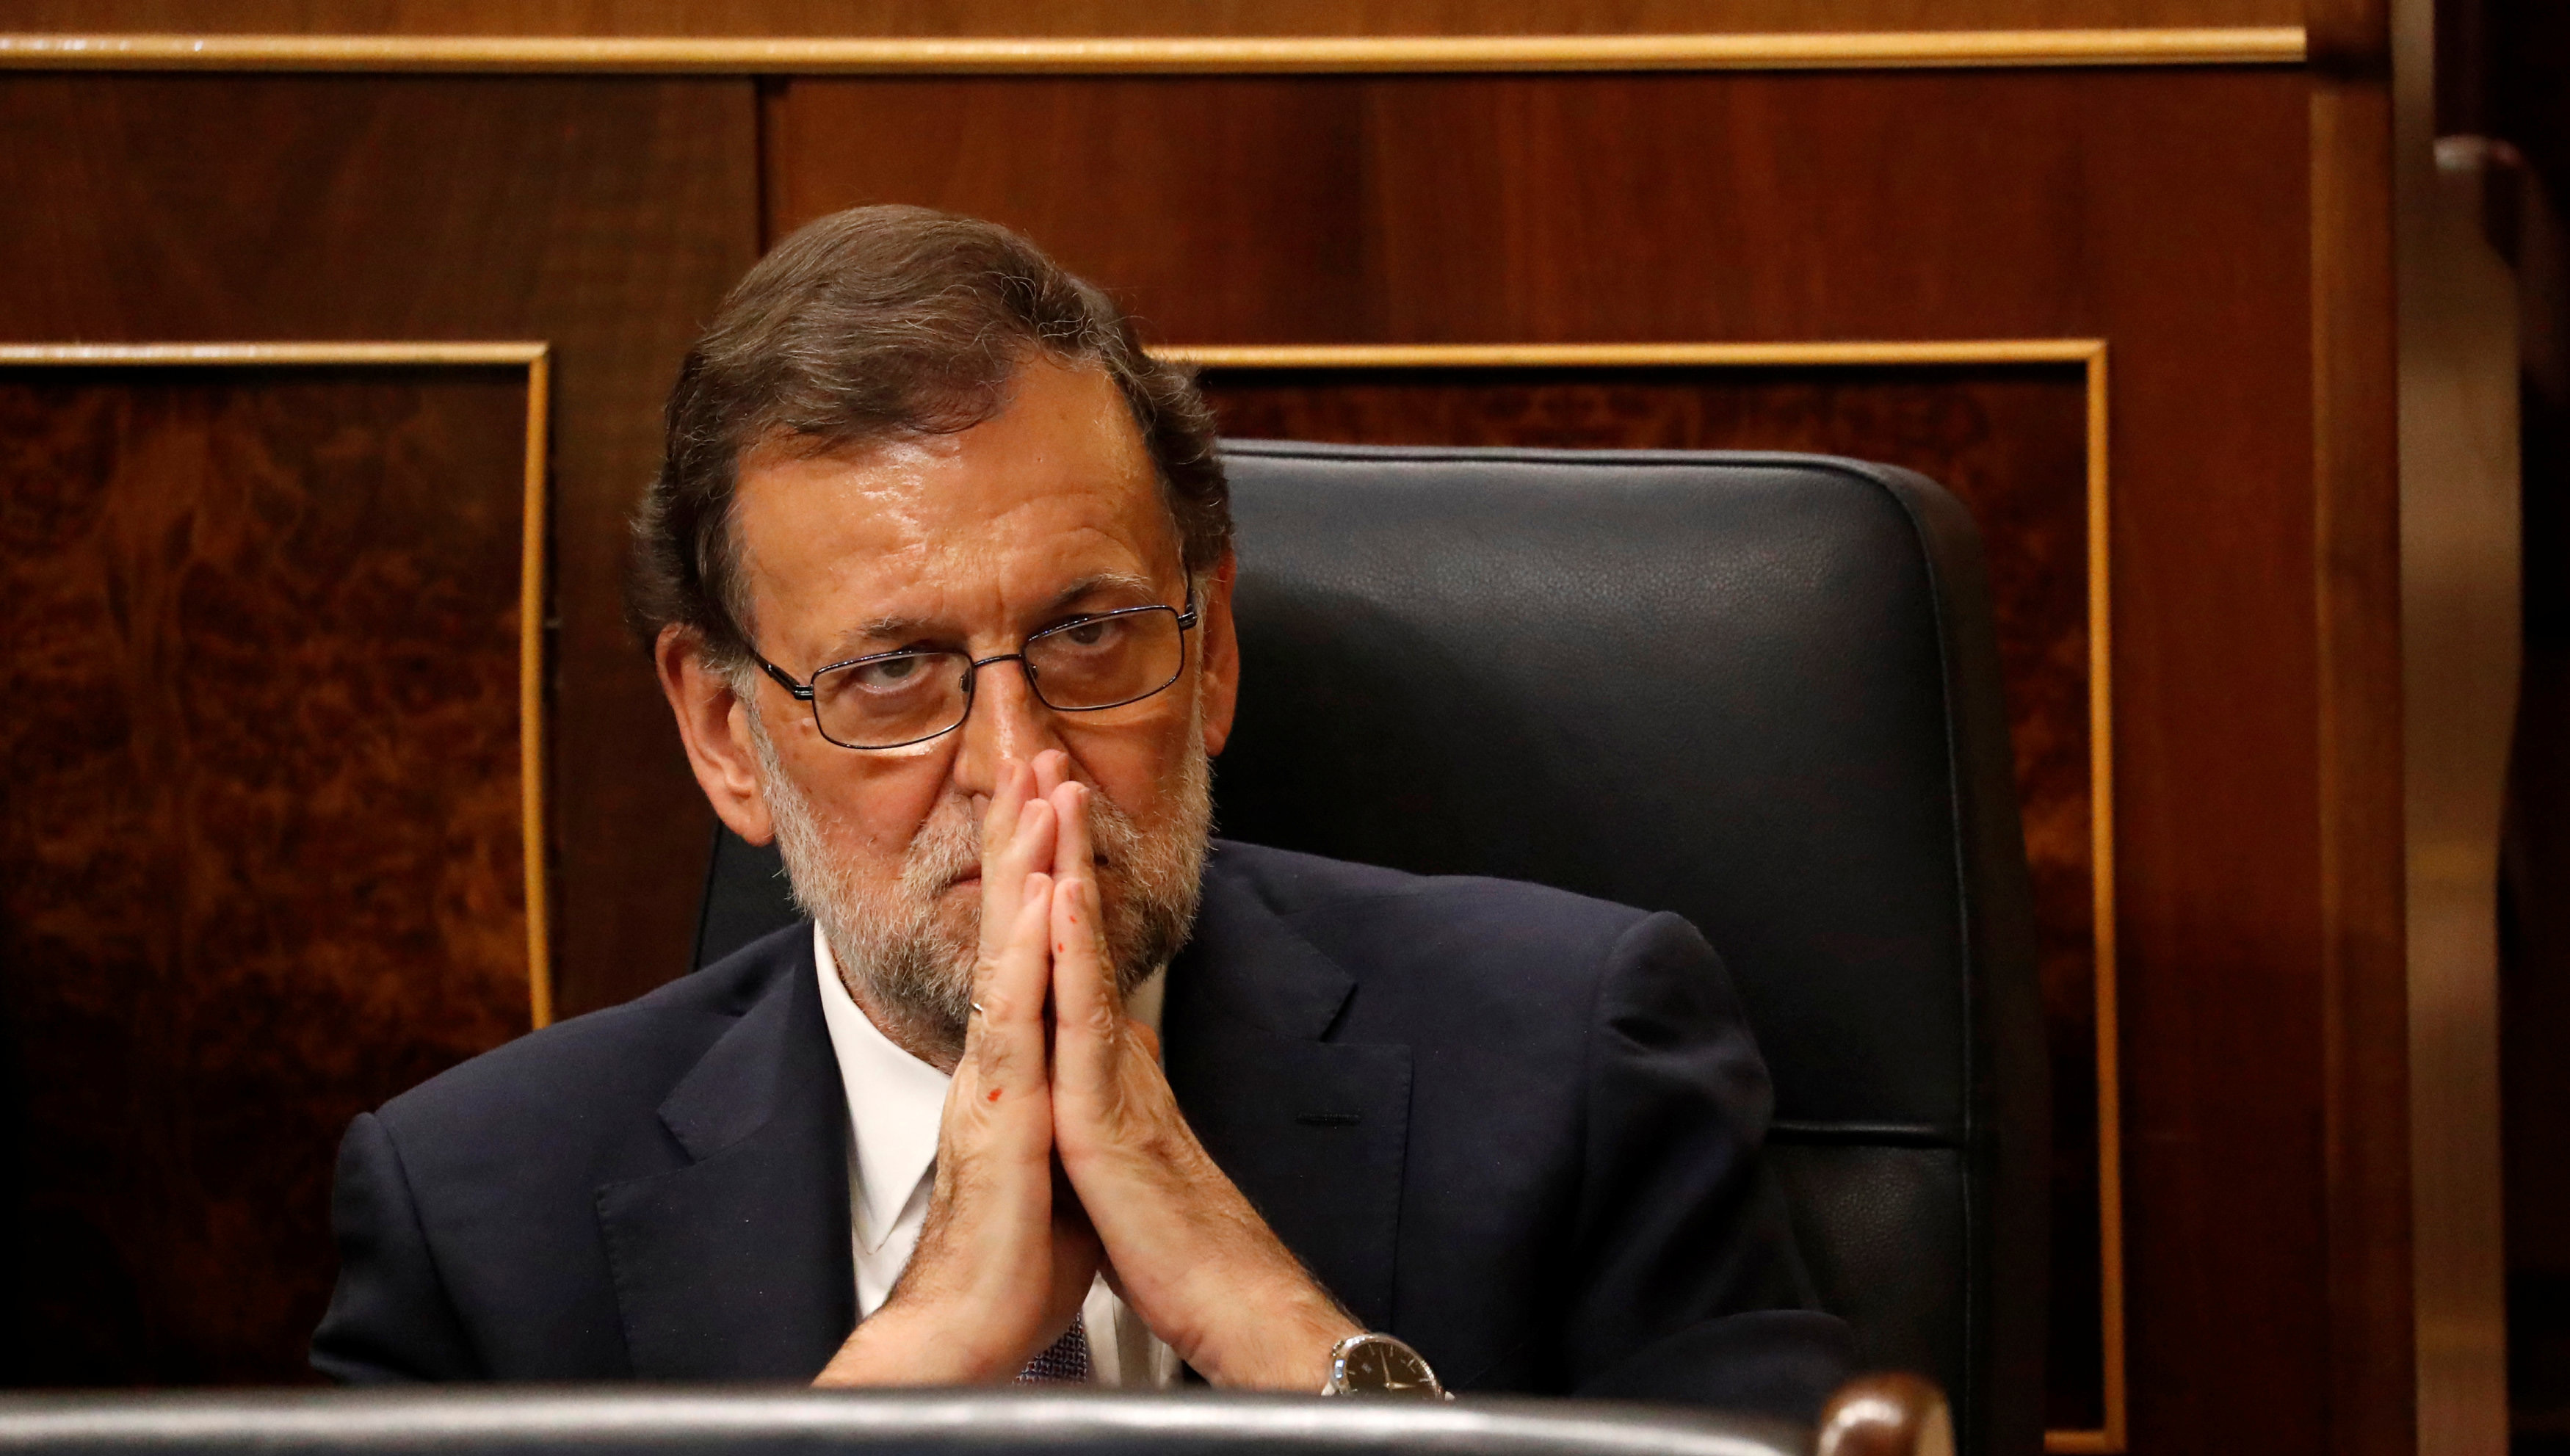 Rajoy alega que no podrá asistir a la cumbre porque solo es un presidente de Gobierno en funciones y no goza de los plenos poderes de su cargo.